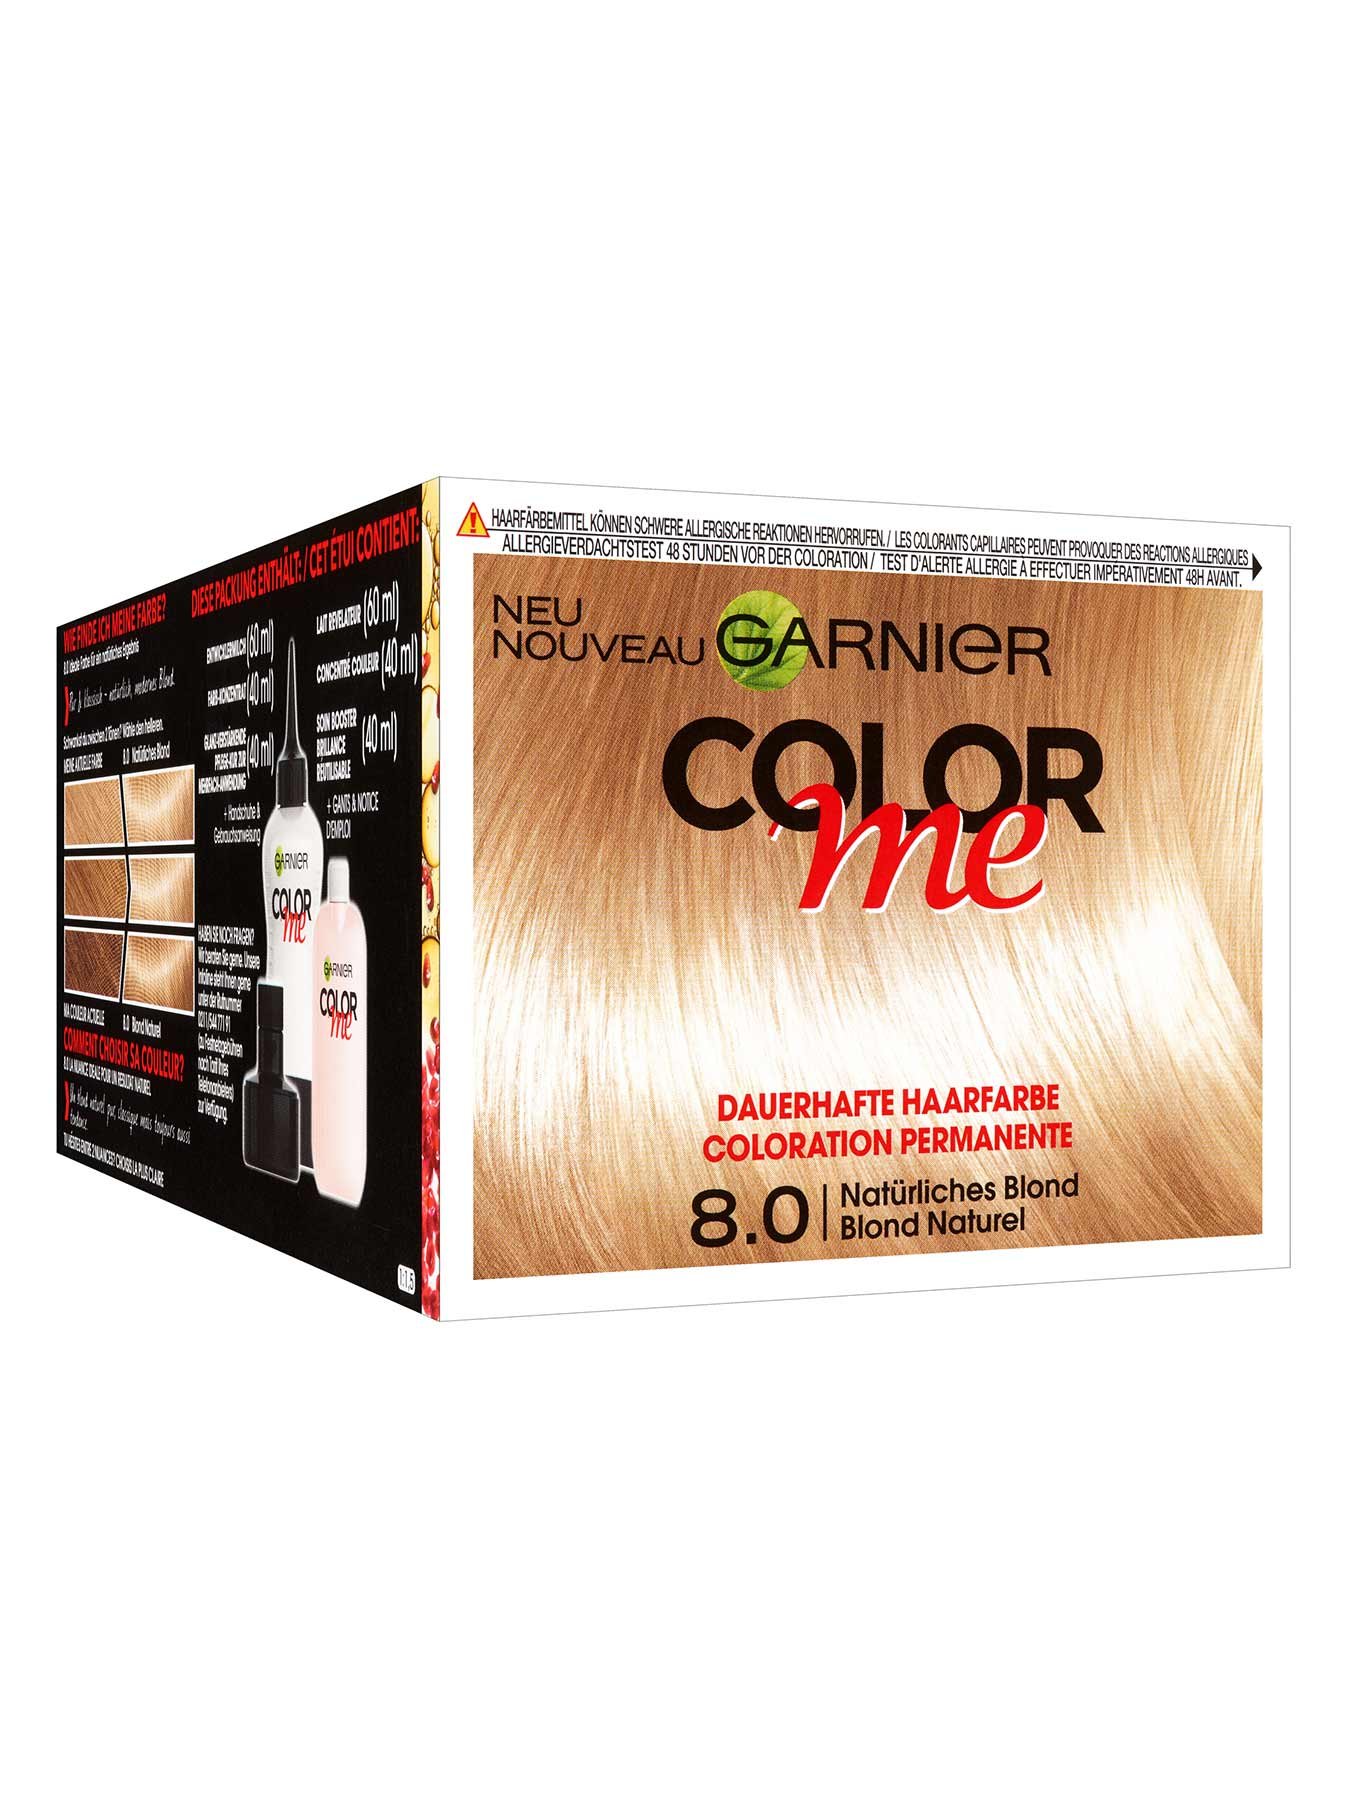 8-0-Natuerliches-Blond-Dauerhafte-Haarfarbe-Color-Me-1Stk-Vorderseite-Garnier-Deutschland-gr